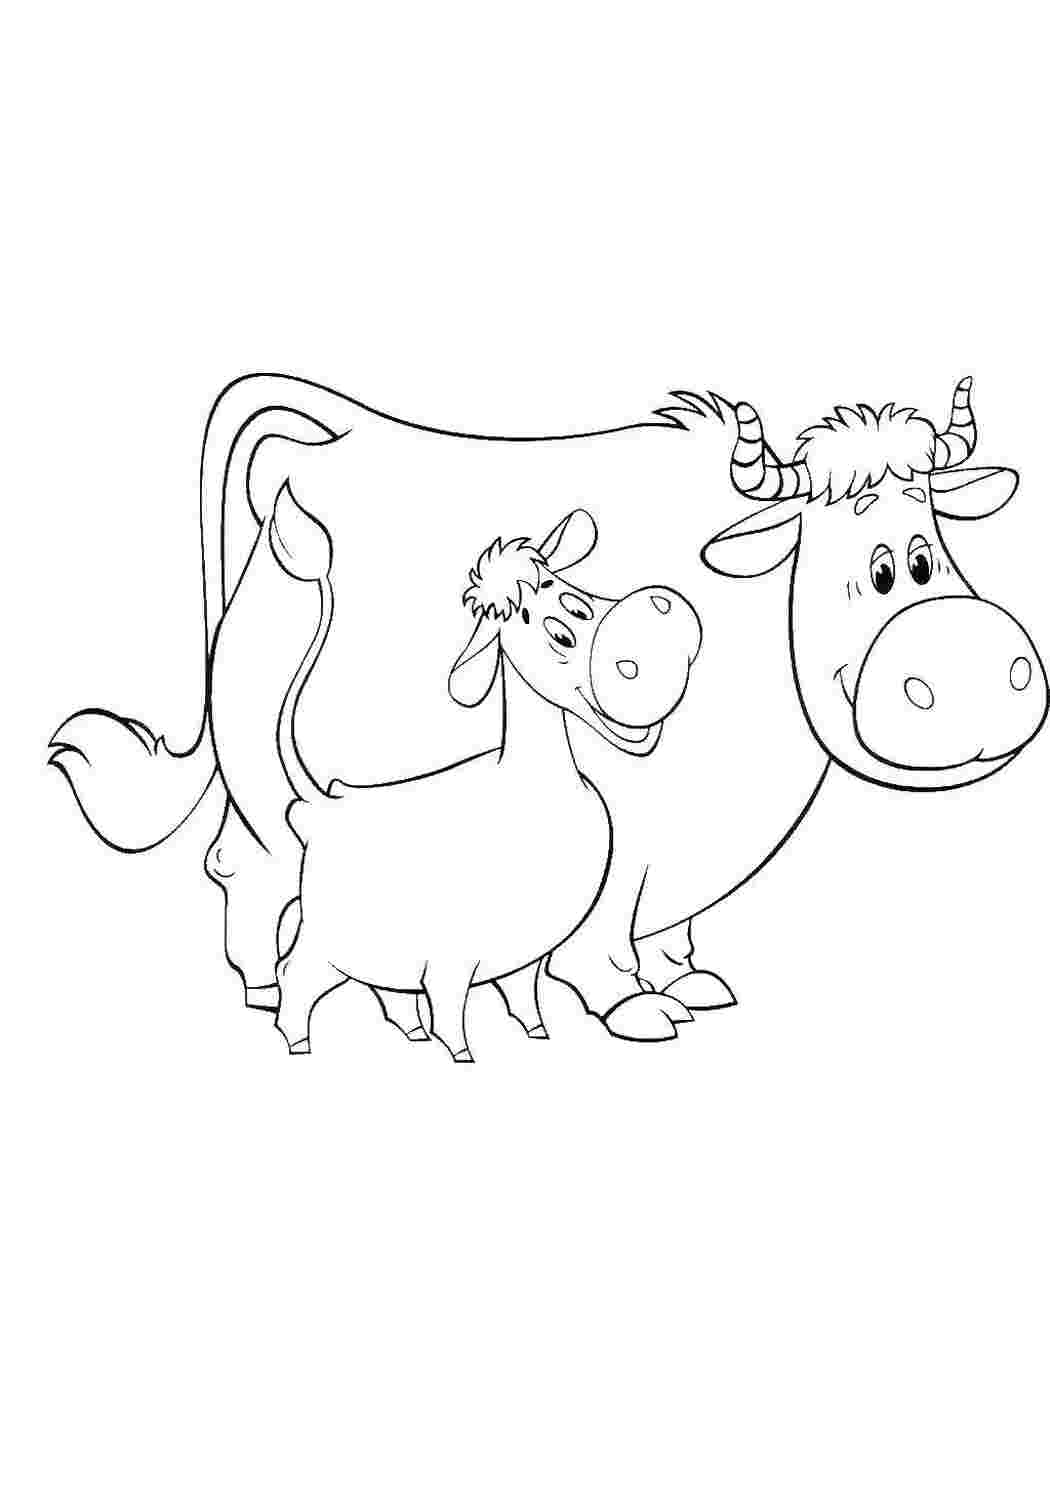 Раскраски Корова мурка и теленок гаврюша раскраски простоквашино корова мурка, теленок гаврюша